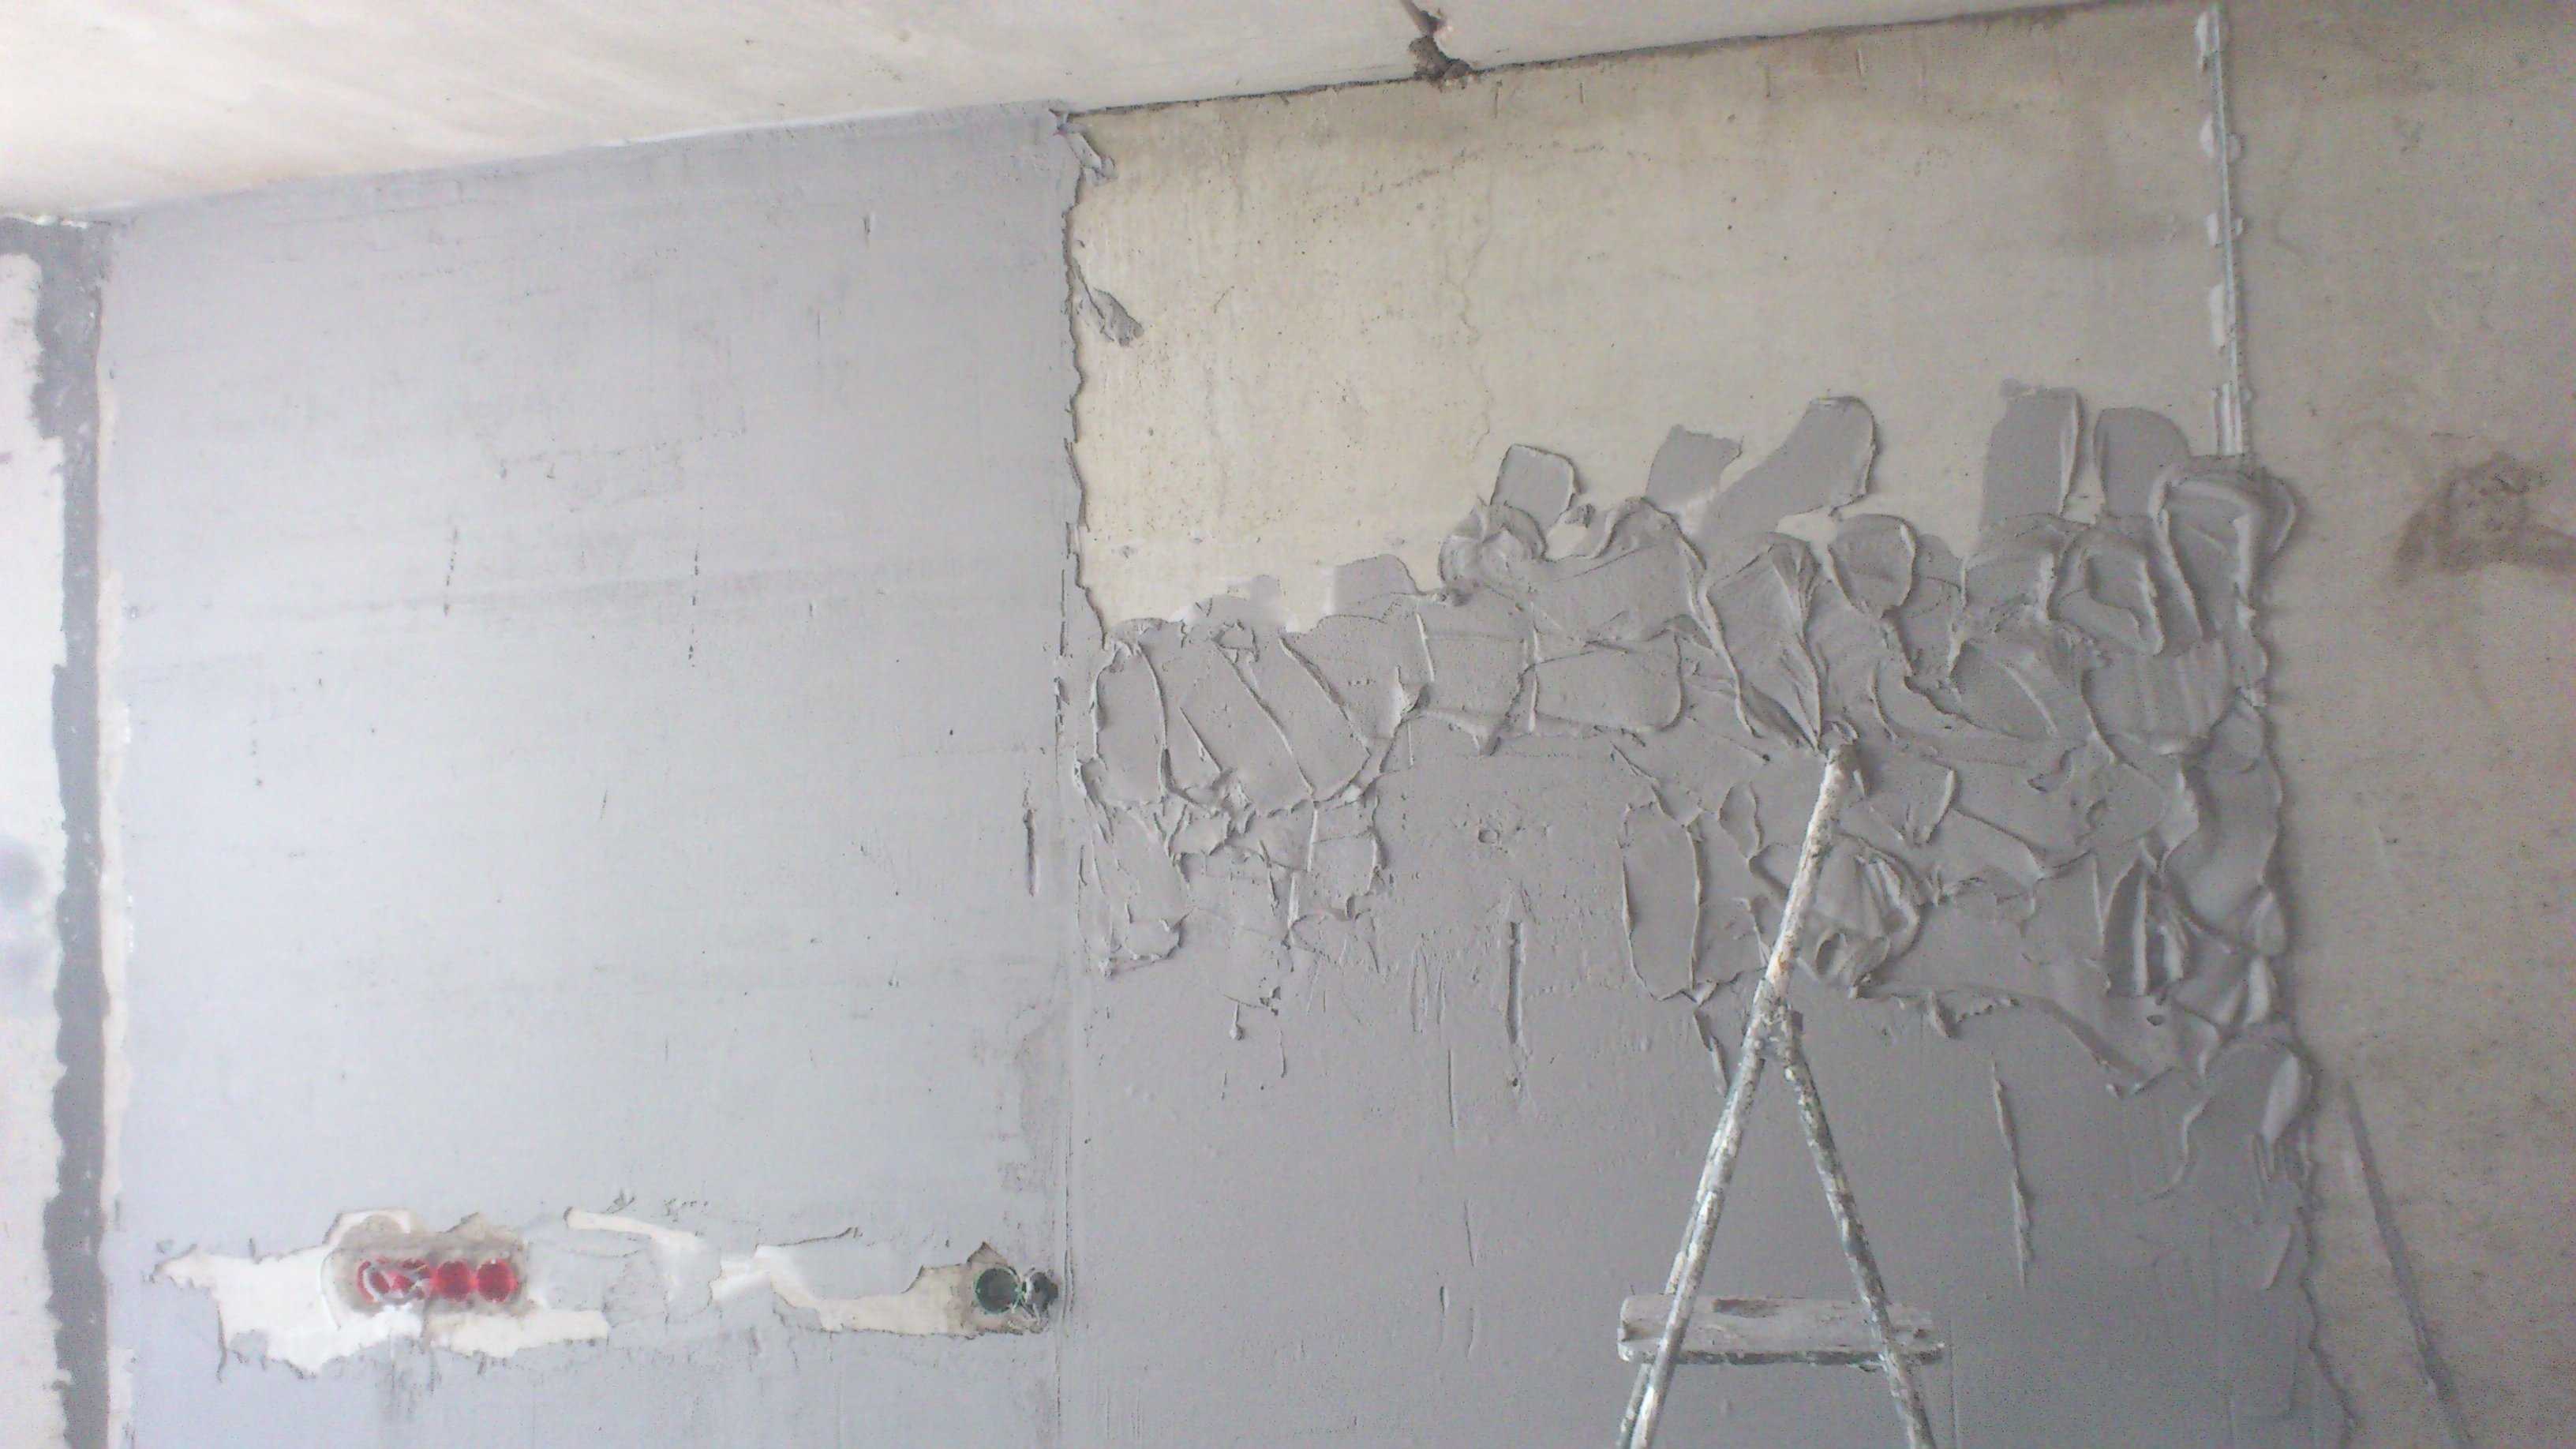 Выравнивание стен штукатуркой часто не дает идеально ровной поверхности подходящей для последующей поклейки обоев Только штукатурить стены недостаточно — под обои обязательно требуется дополнительная обработка шпаклевкой